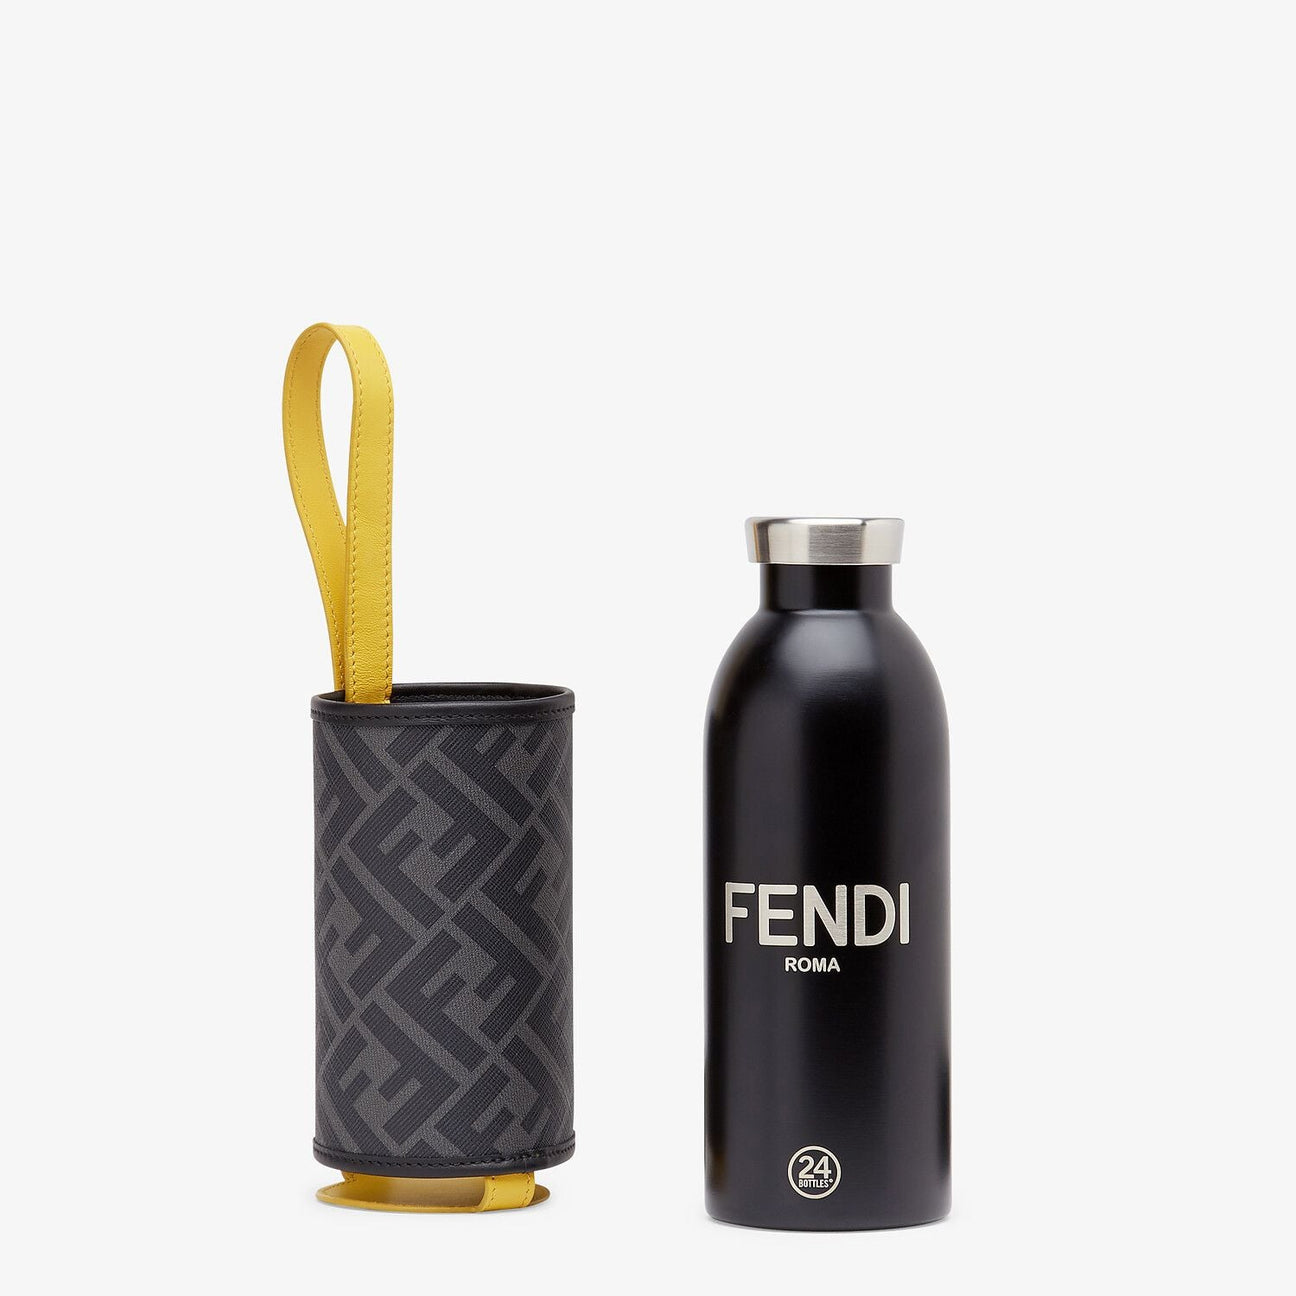 FENDI x 24Bottles: insulated bottles made of stainless steel, not aluminium